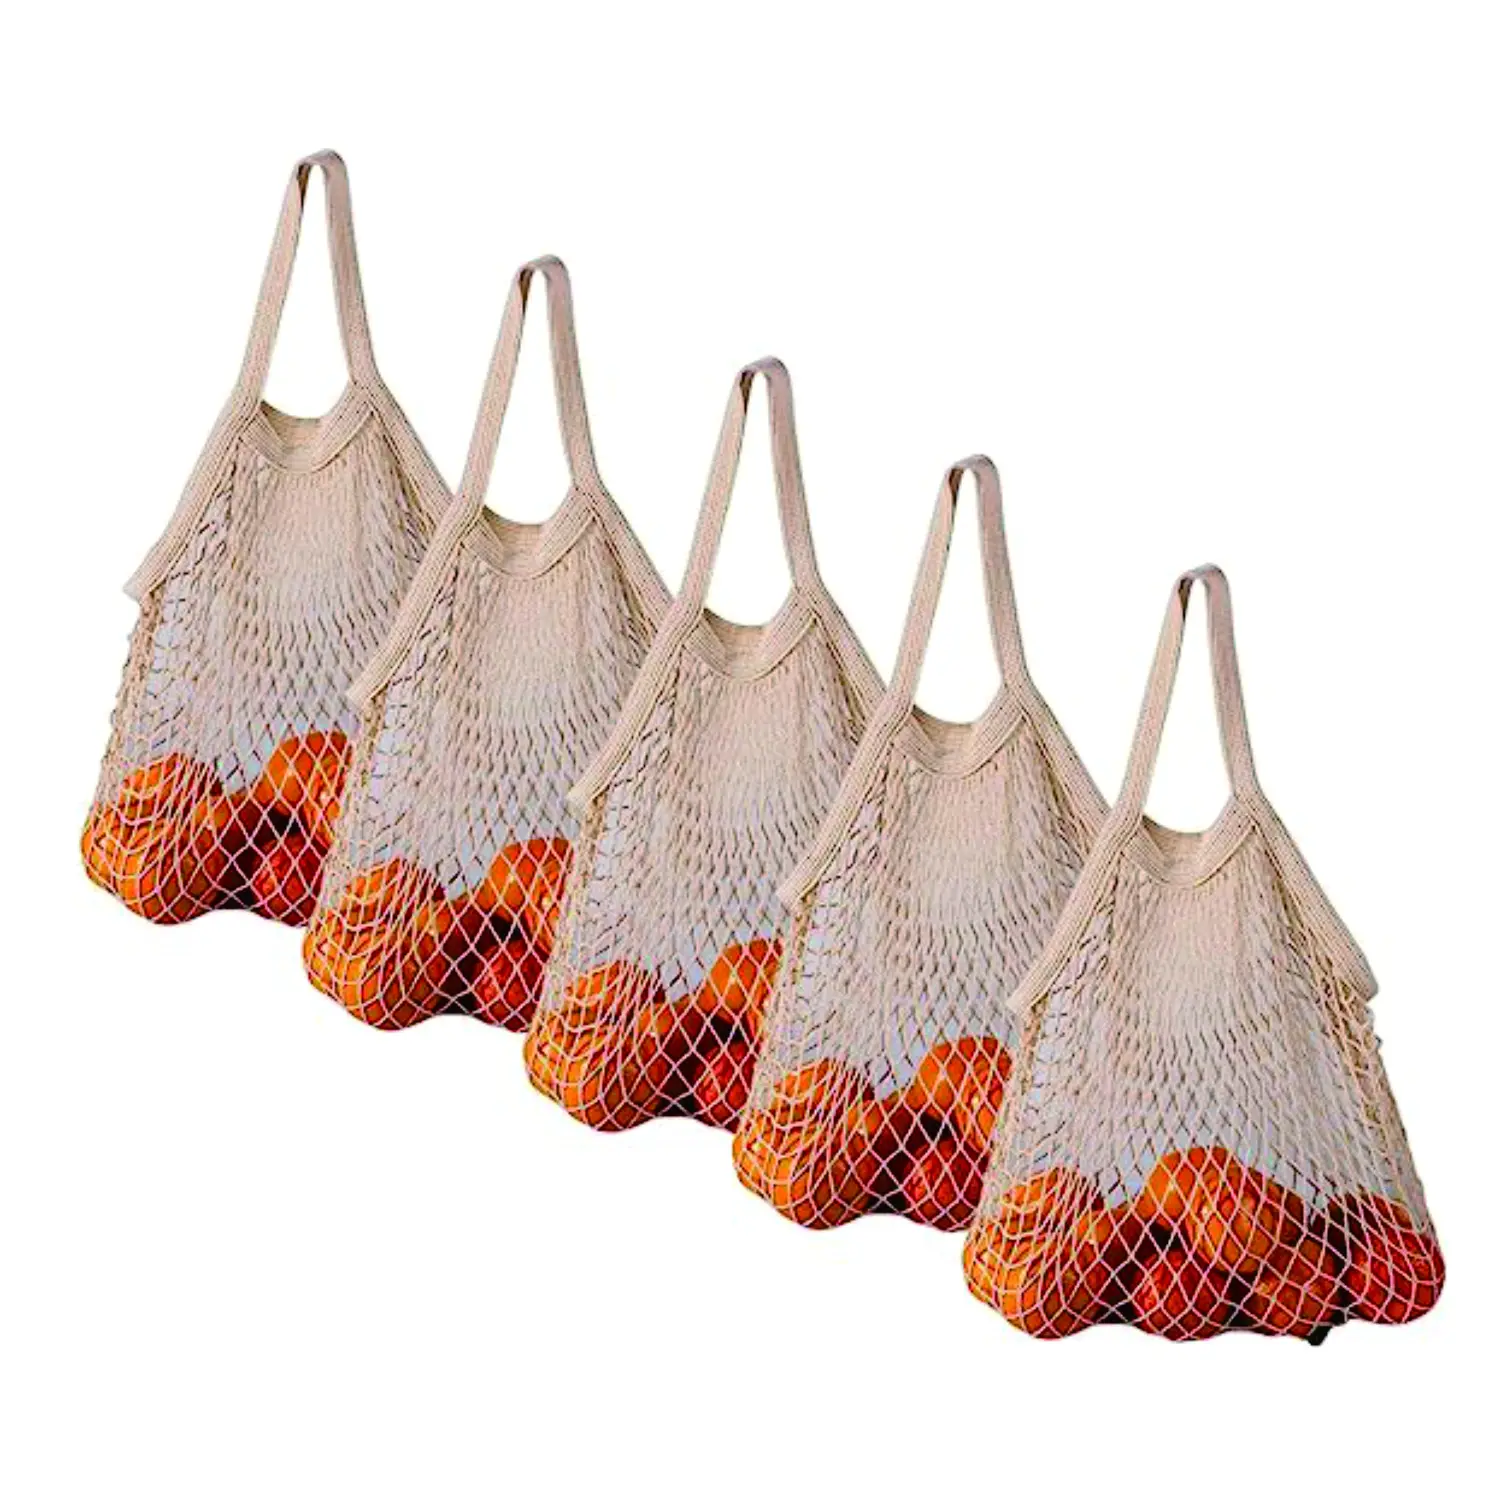 Cotton Net Shopping Tote Ökologie Markt String Bag Organizer